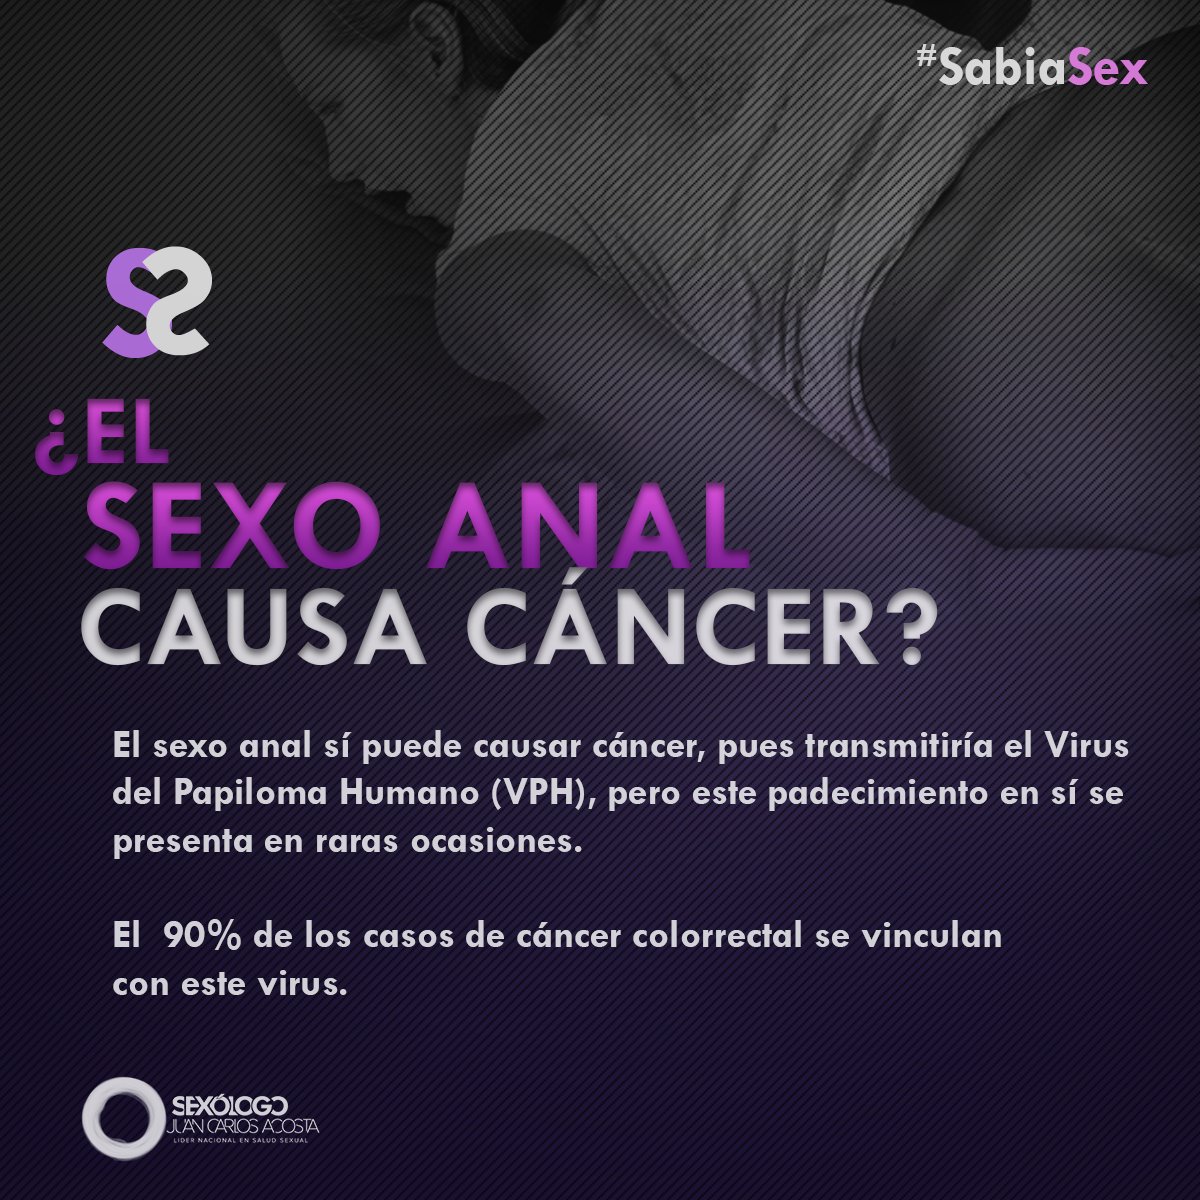 Ver filme de sexo anal brasileiro